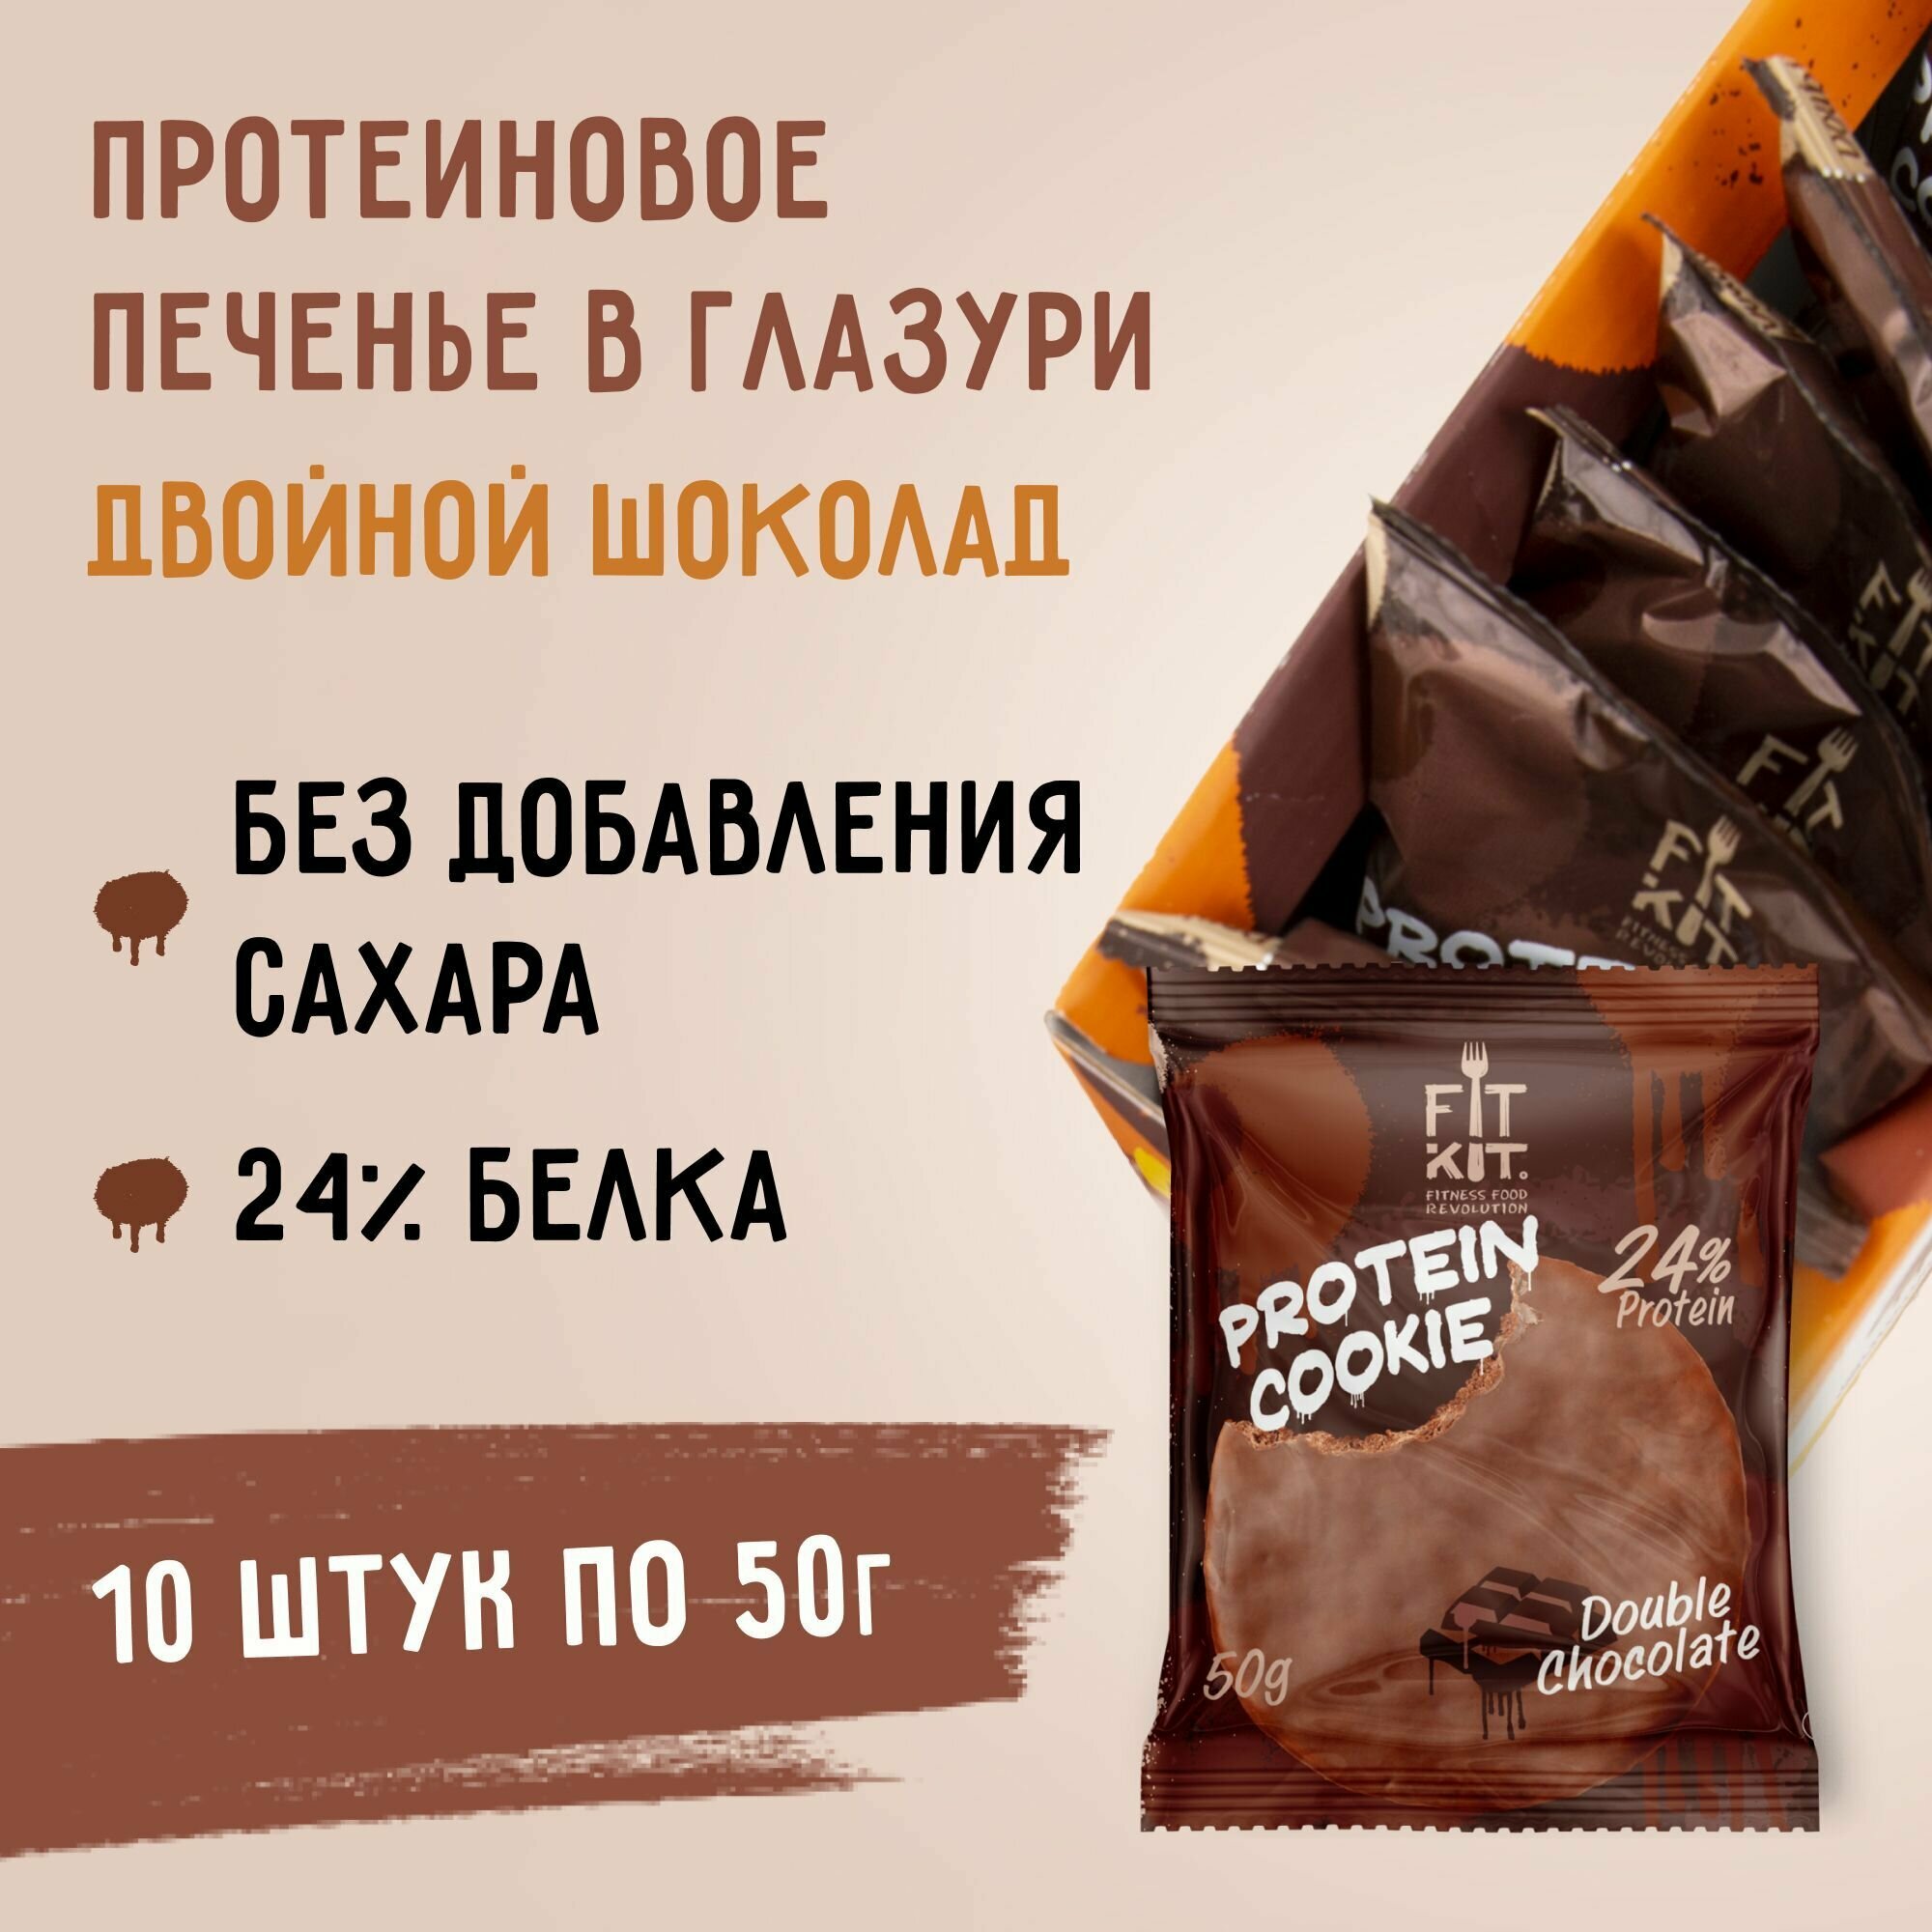 Протеиновое печенье в шоколаде без сахара Fit Kit Chocolate Protein Cookie, 10шт x 50г (двойной шоколад)